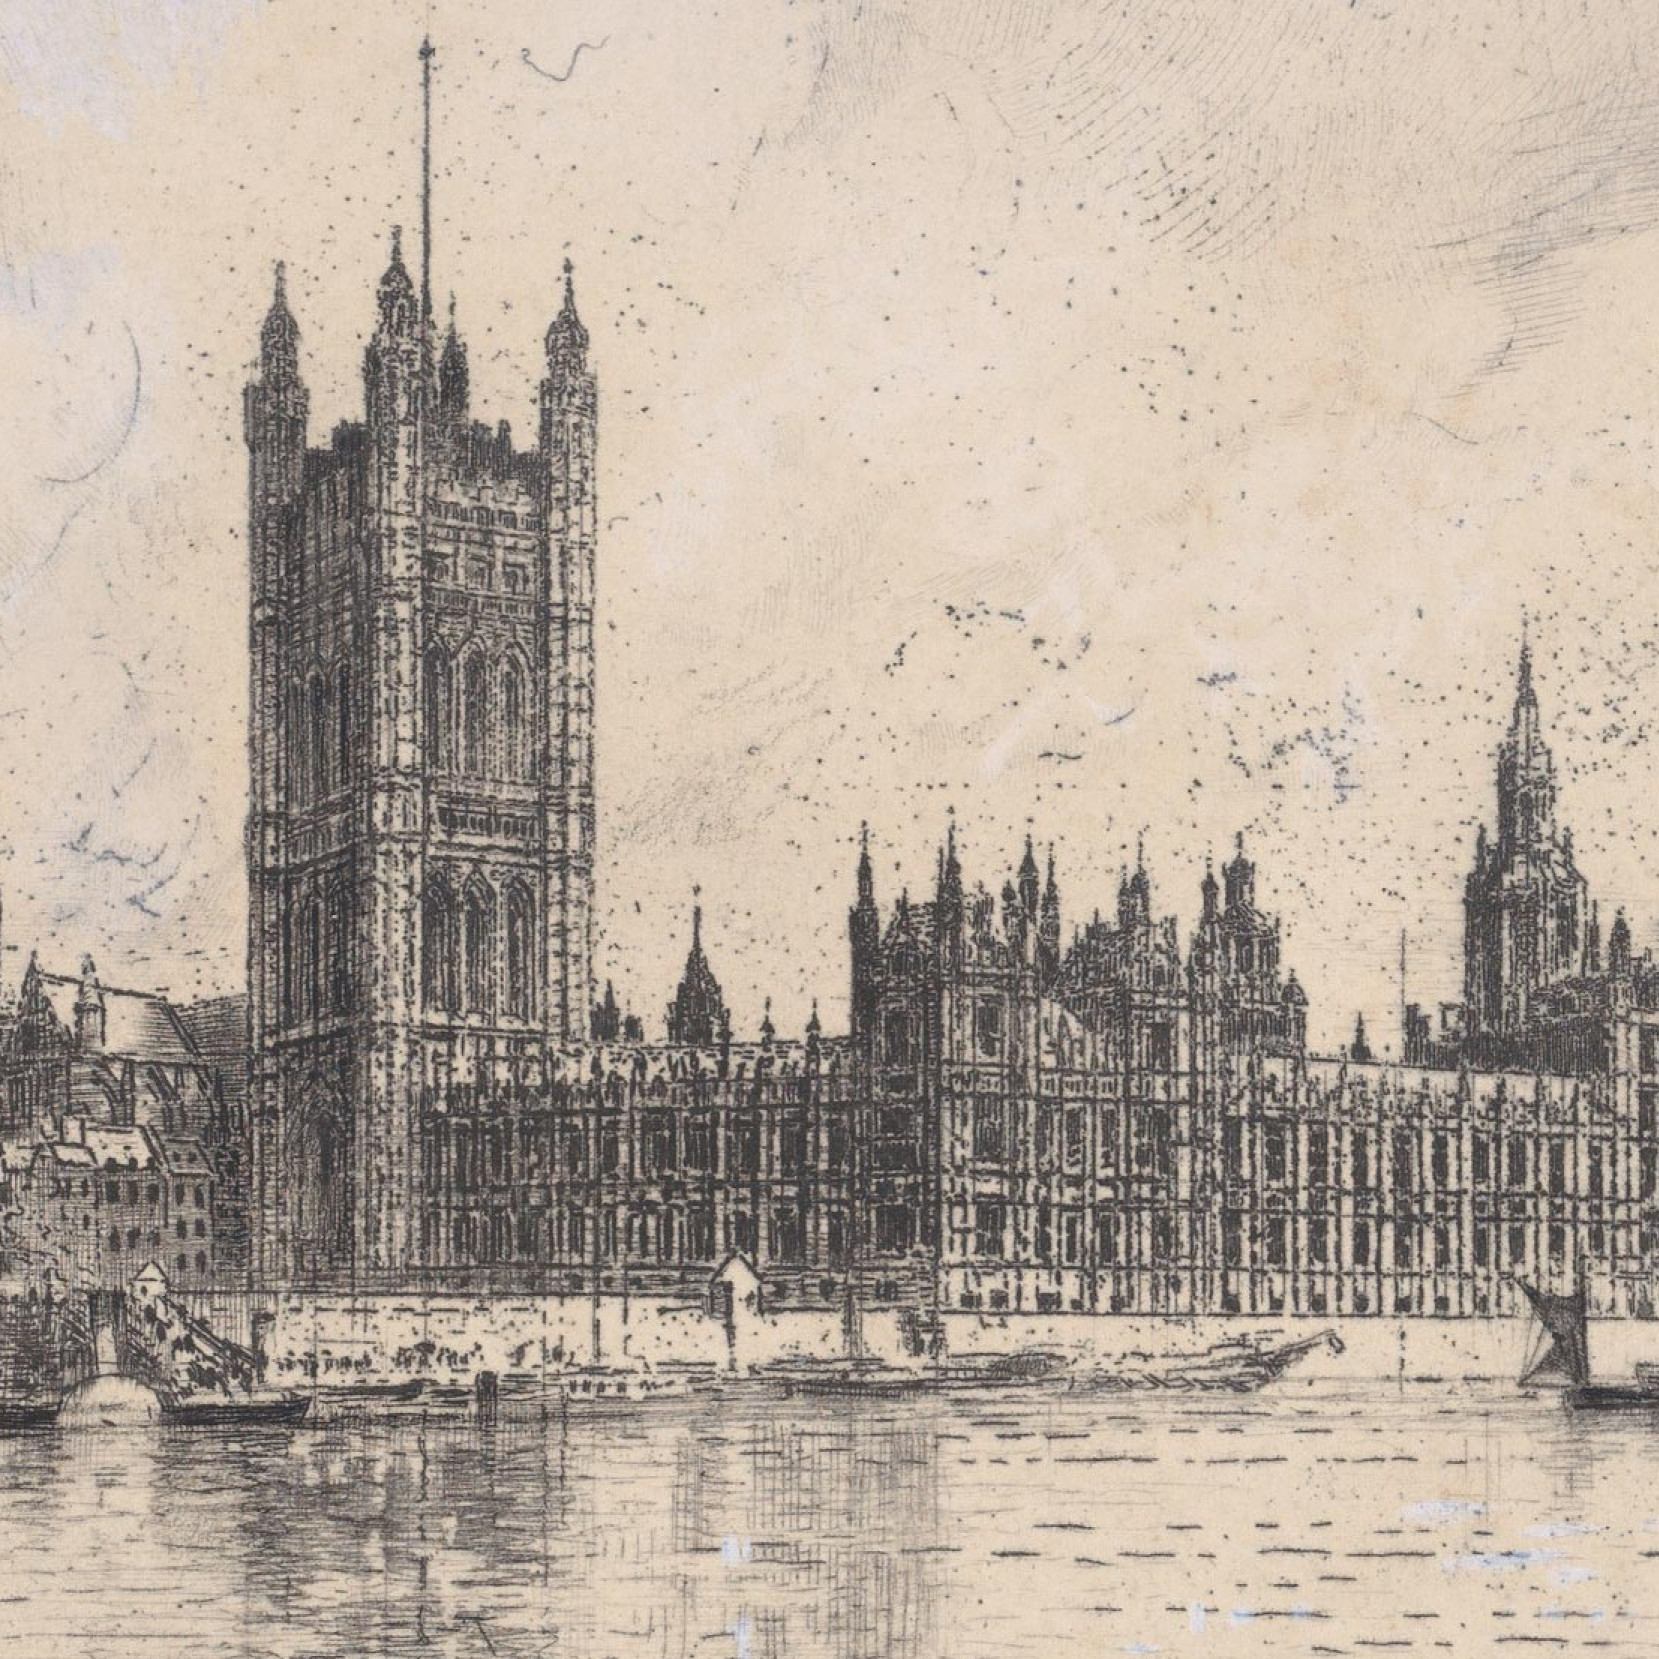 London Parliament House - public domain